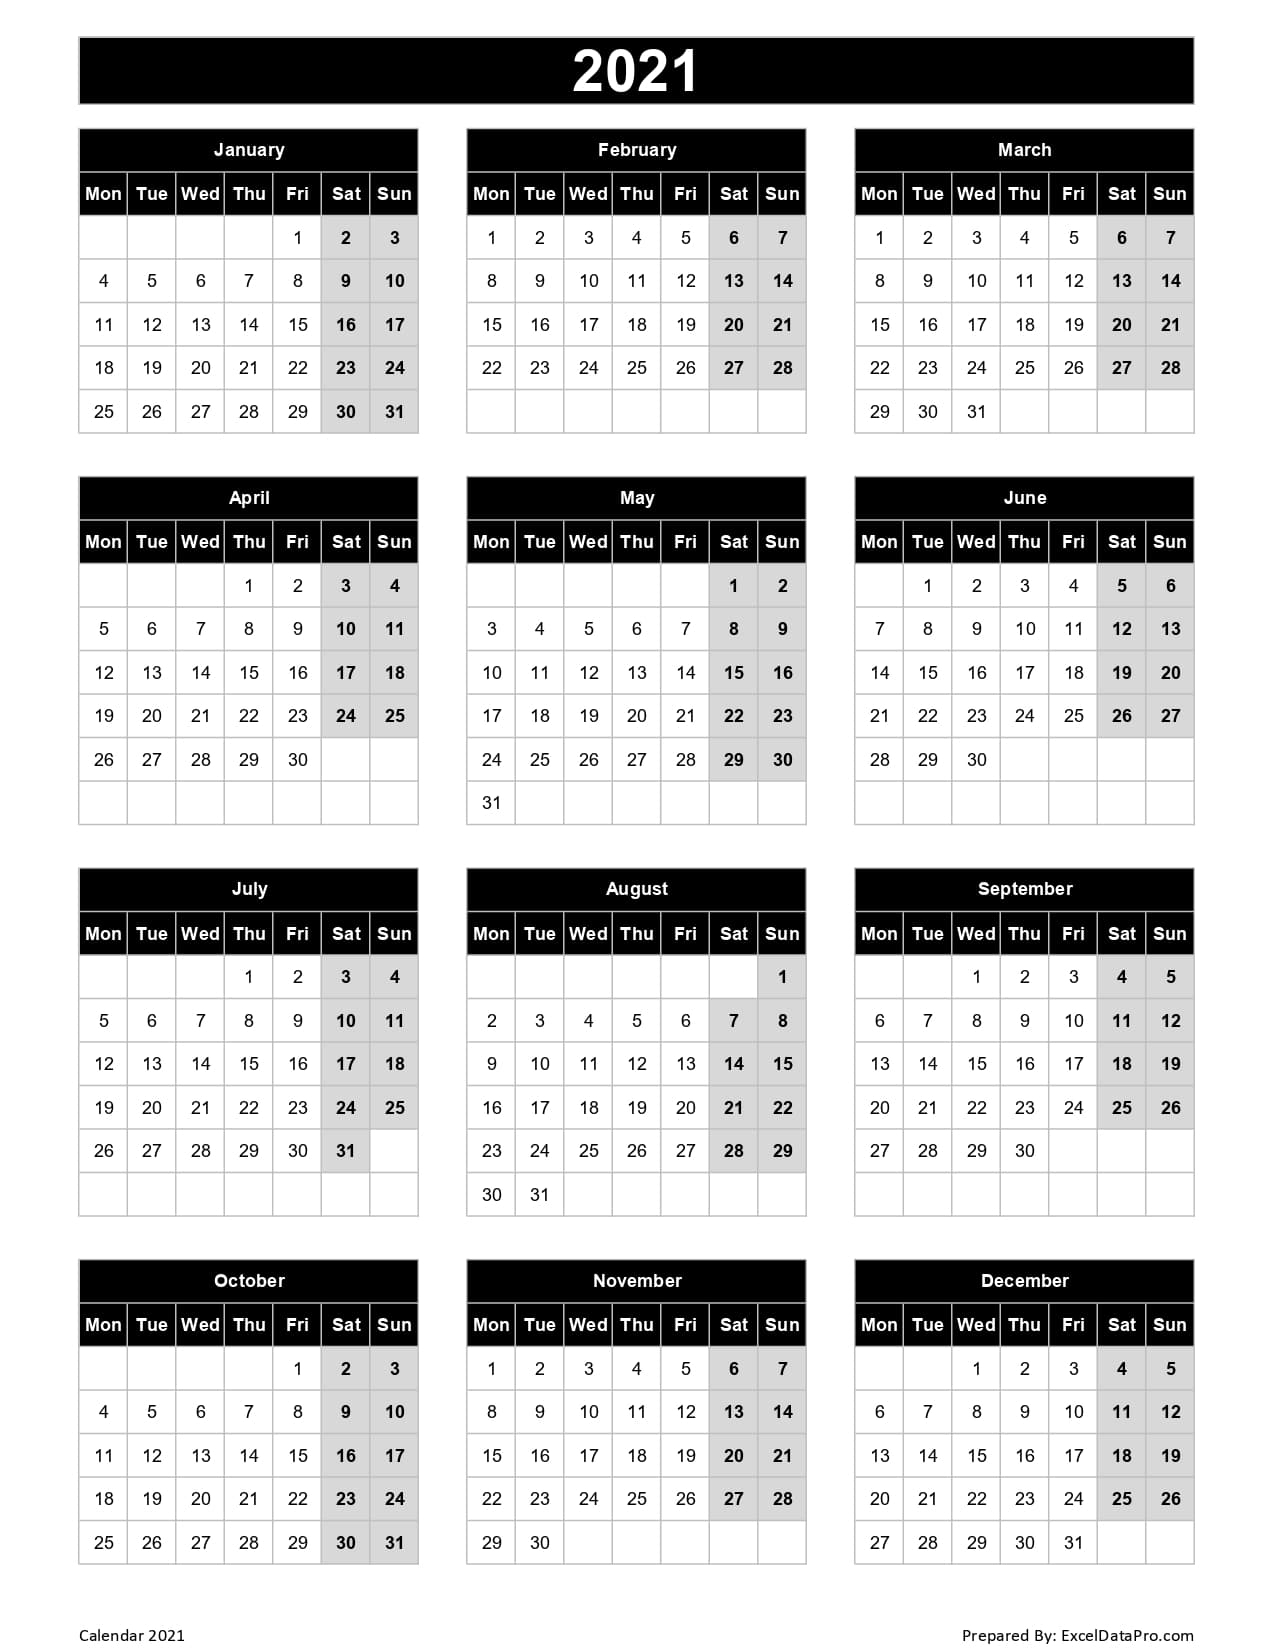 2021 Calendar In Excel By Week | Calendar Printables Free